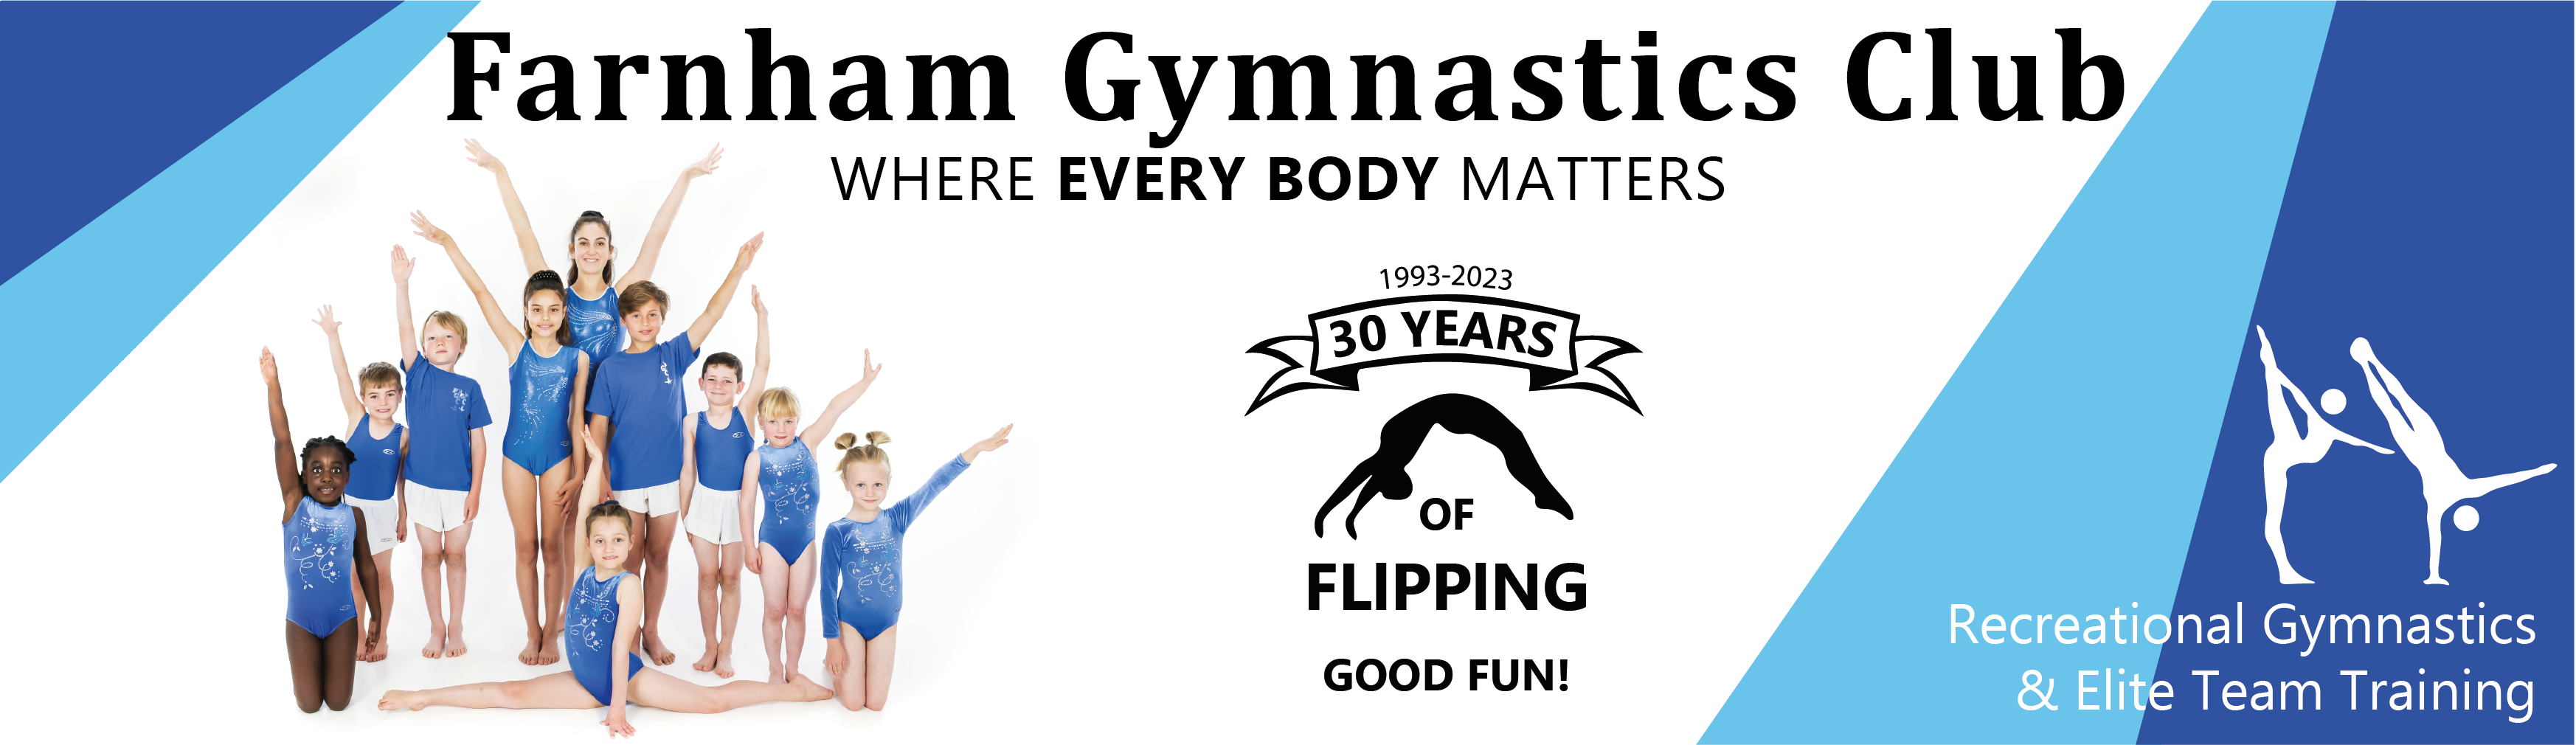 Farnham Gymnastics Club